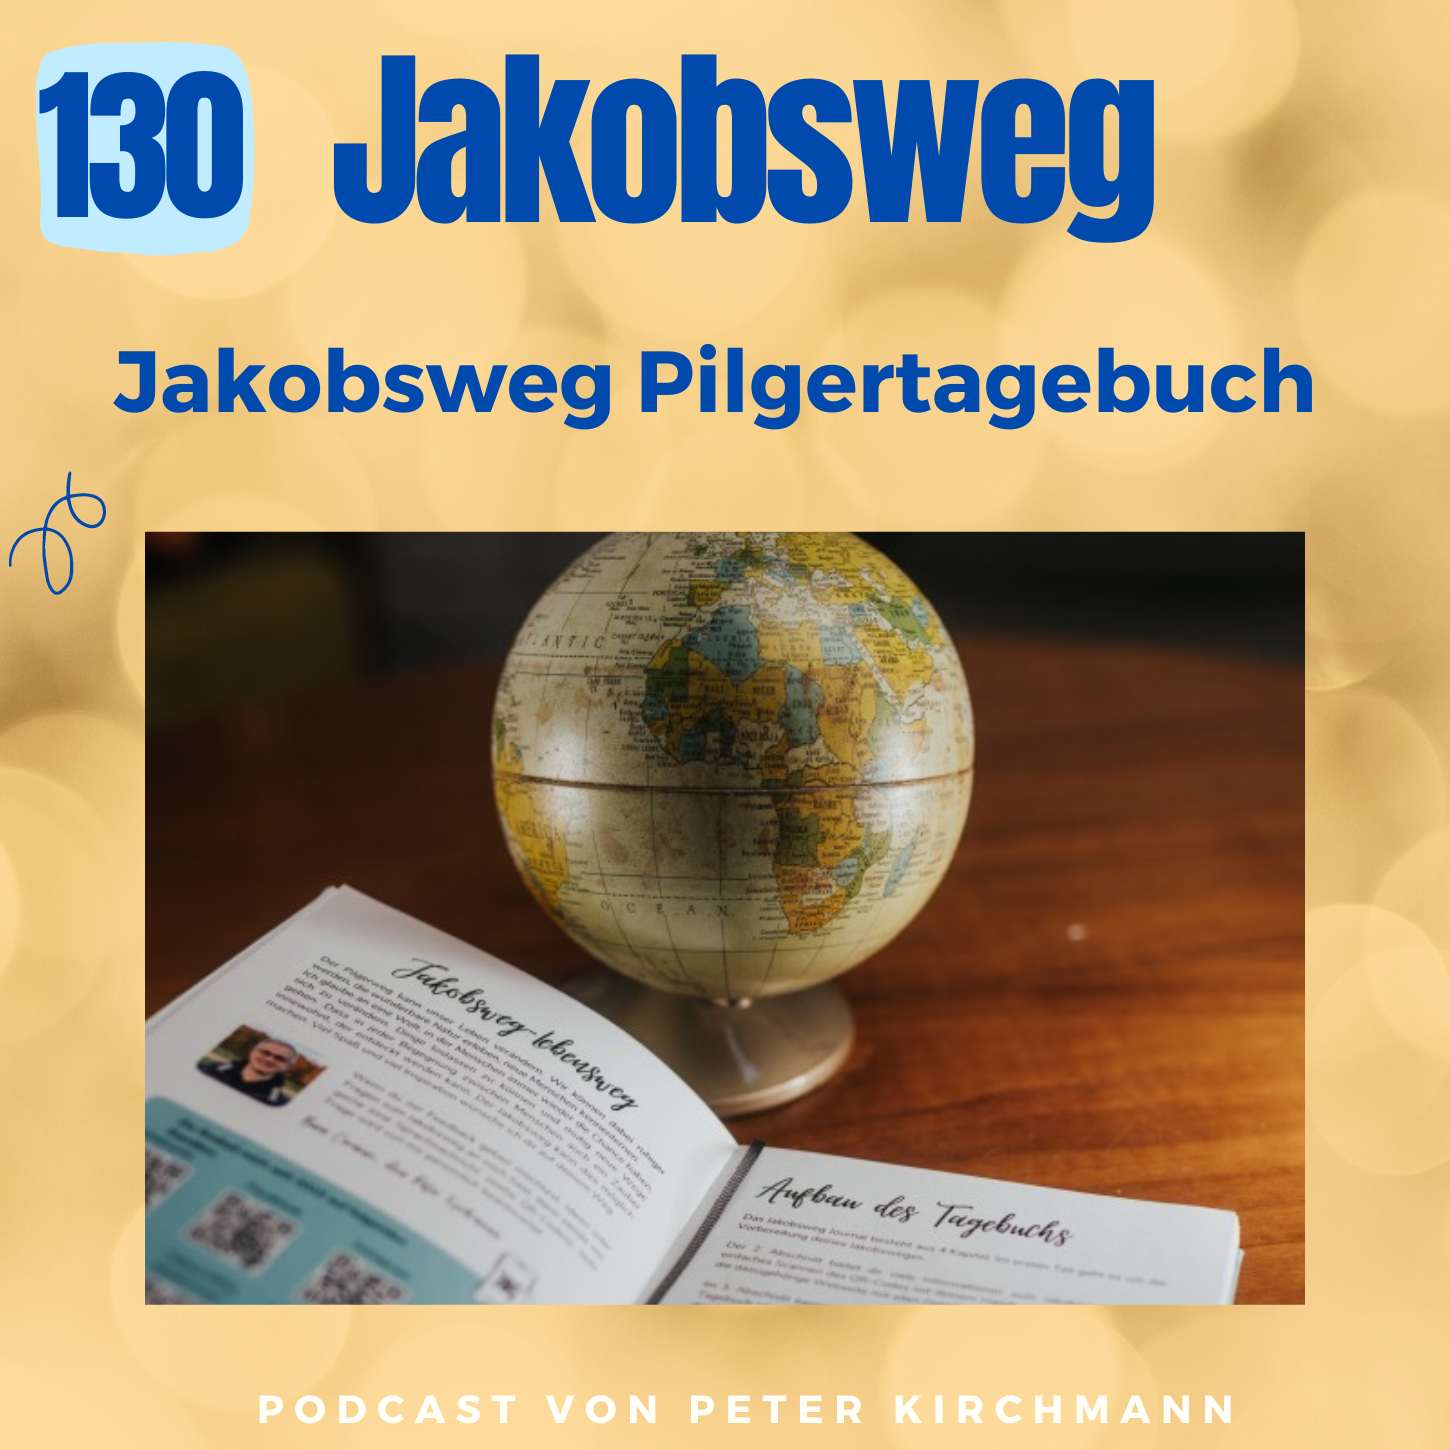 Jakobsweg Pilgertagebuch: Schreiben ist wertvoll (130)